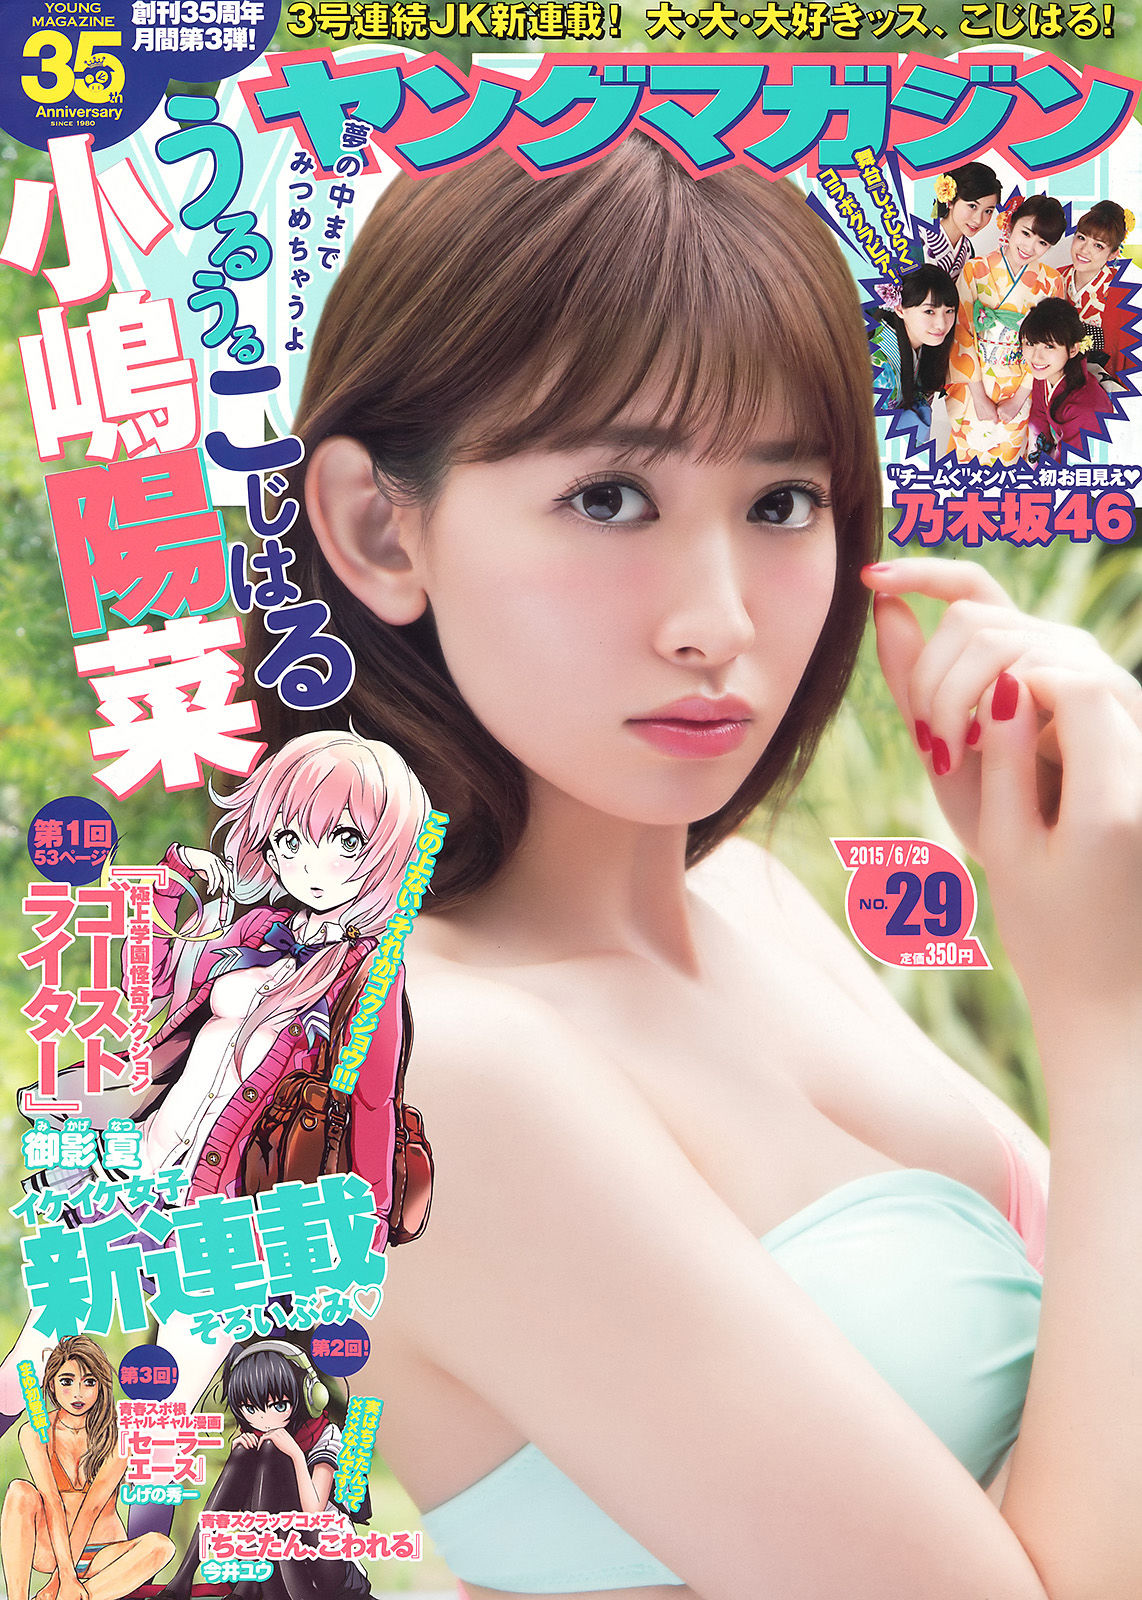 [Young Magazine]日本嫩模:小岛阳菜无圣光私房照片在线浏览(12P)